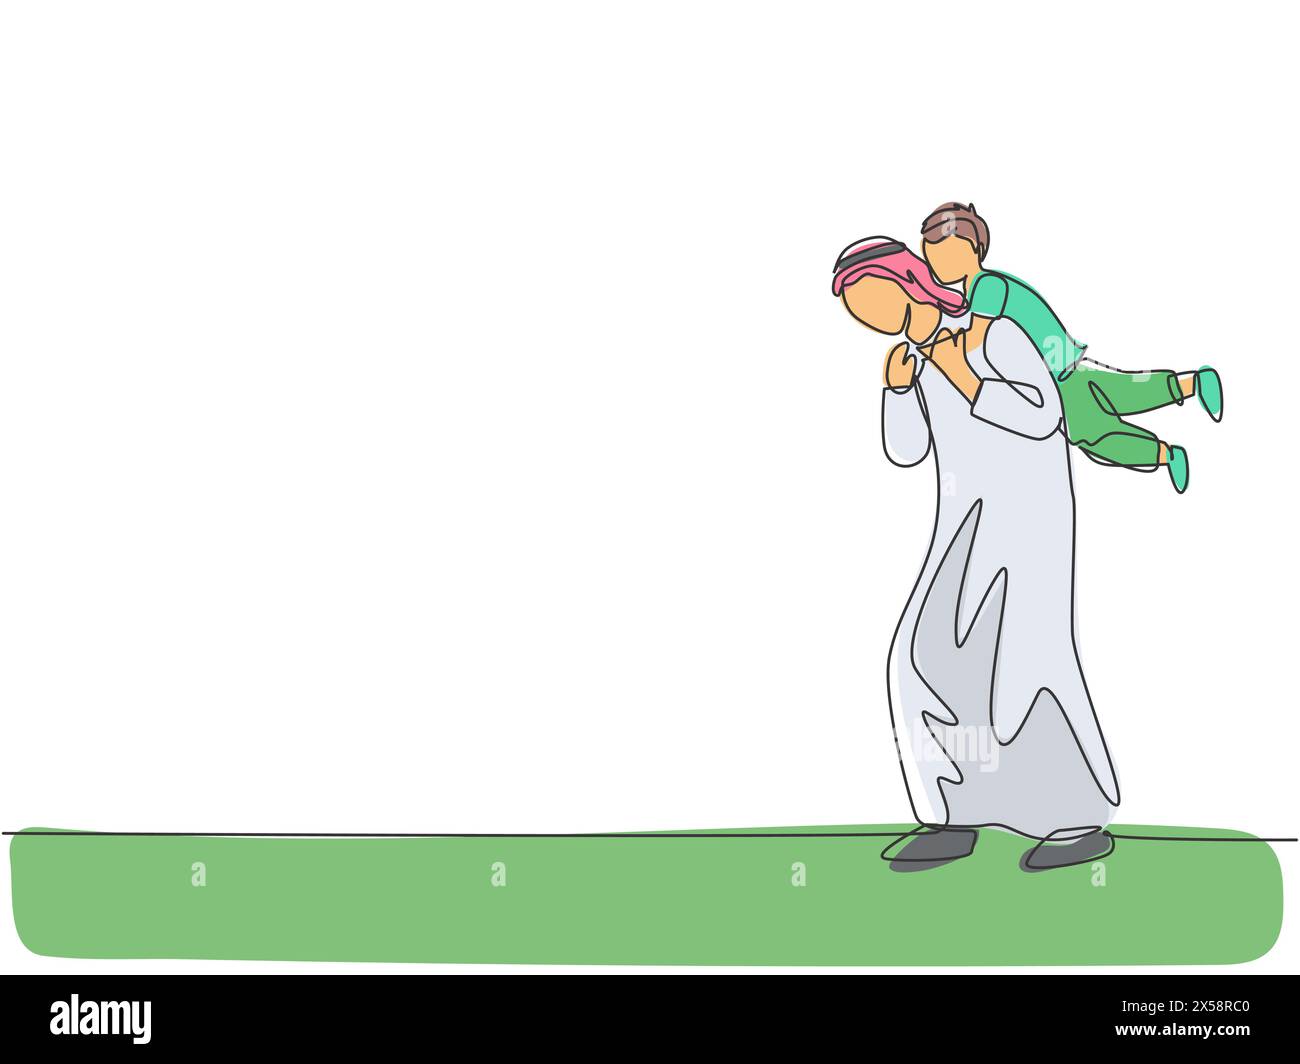 Un disegno continuo del giovane padre arabo che gioca con il figlio e lo tiene alle spalle. Felice concetto di famiglia musulmana di genitorialità islamica. Dinam Illustrazione Vettoriale